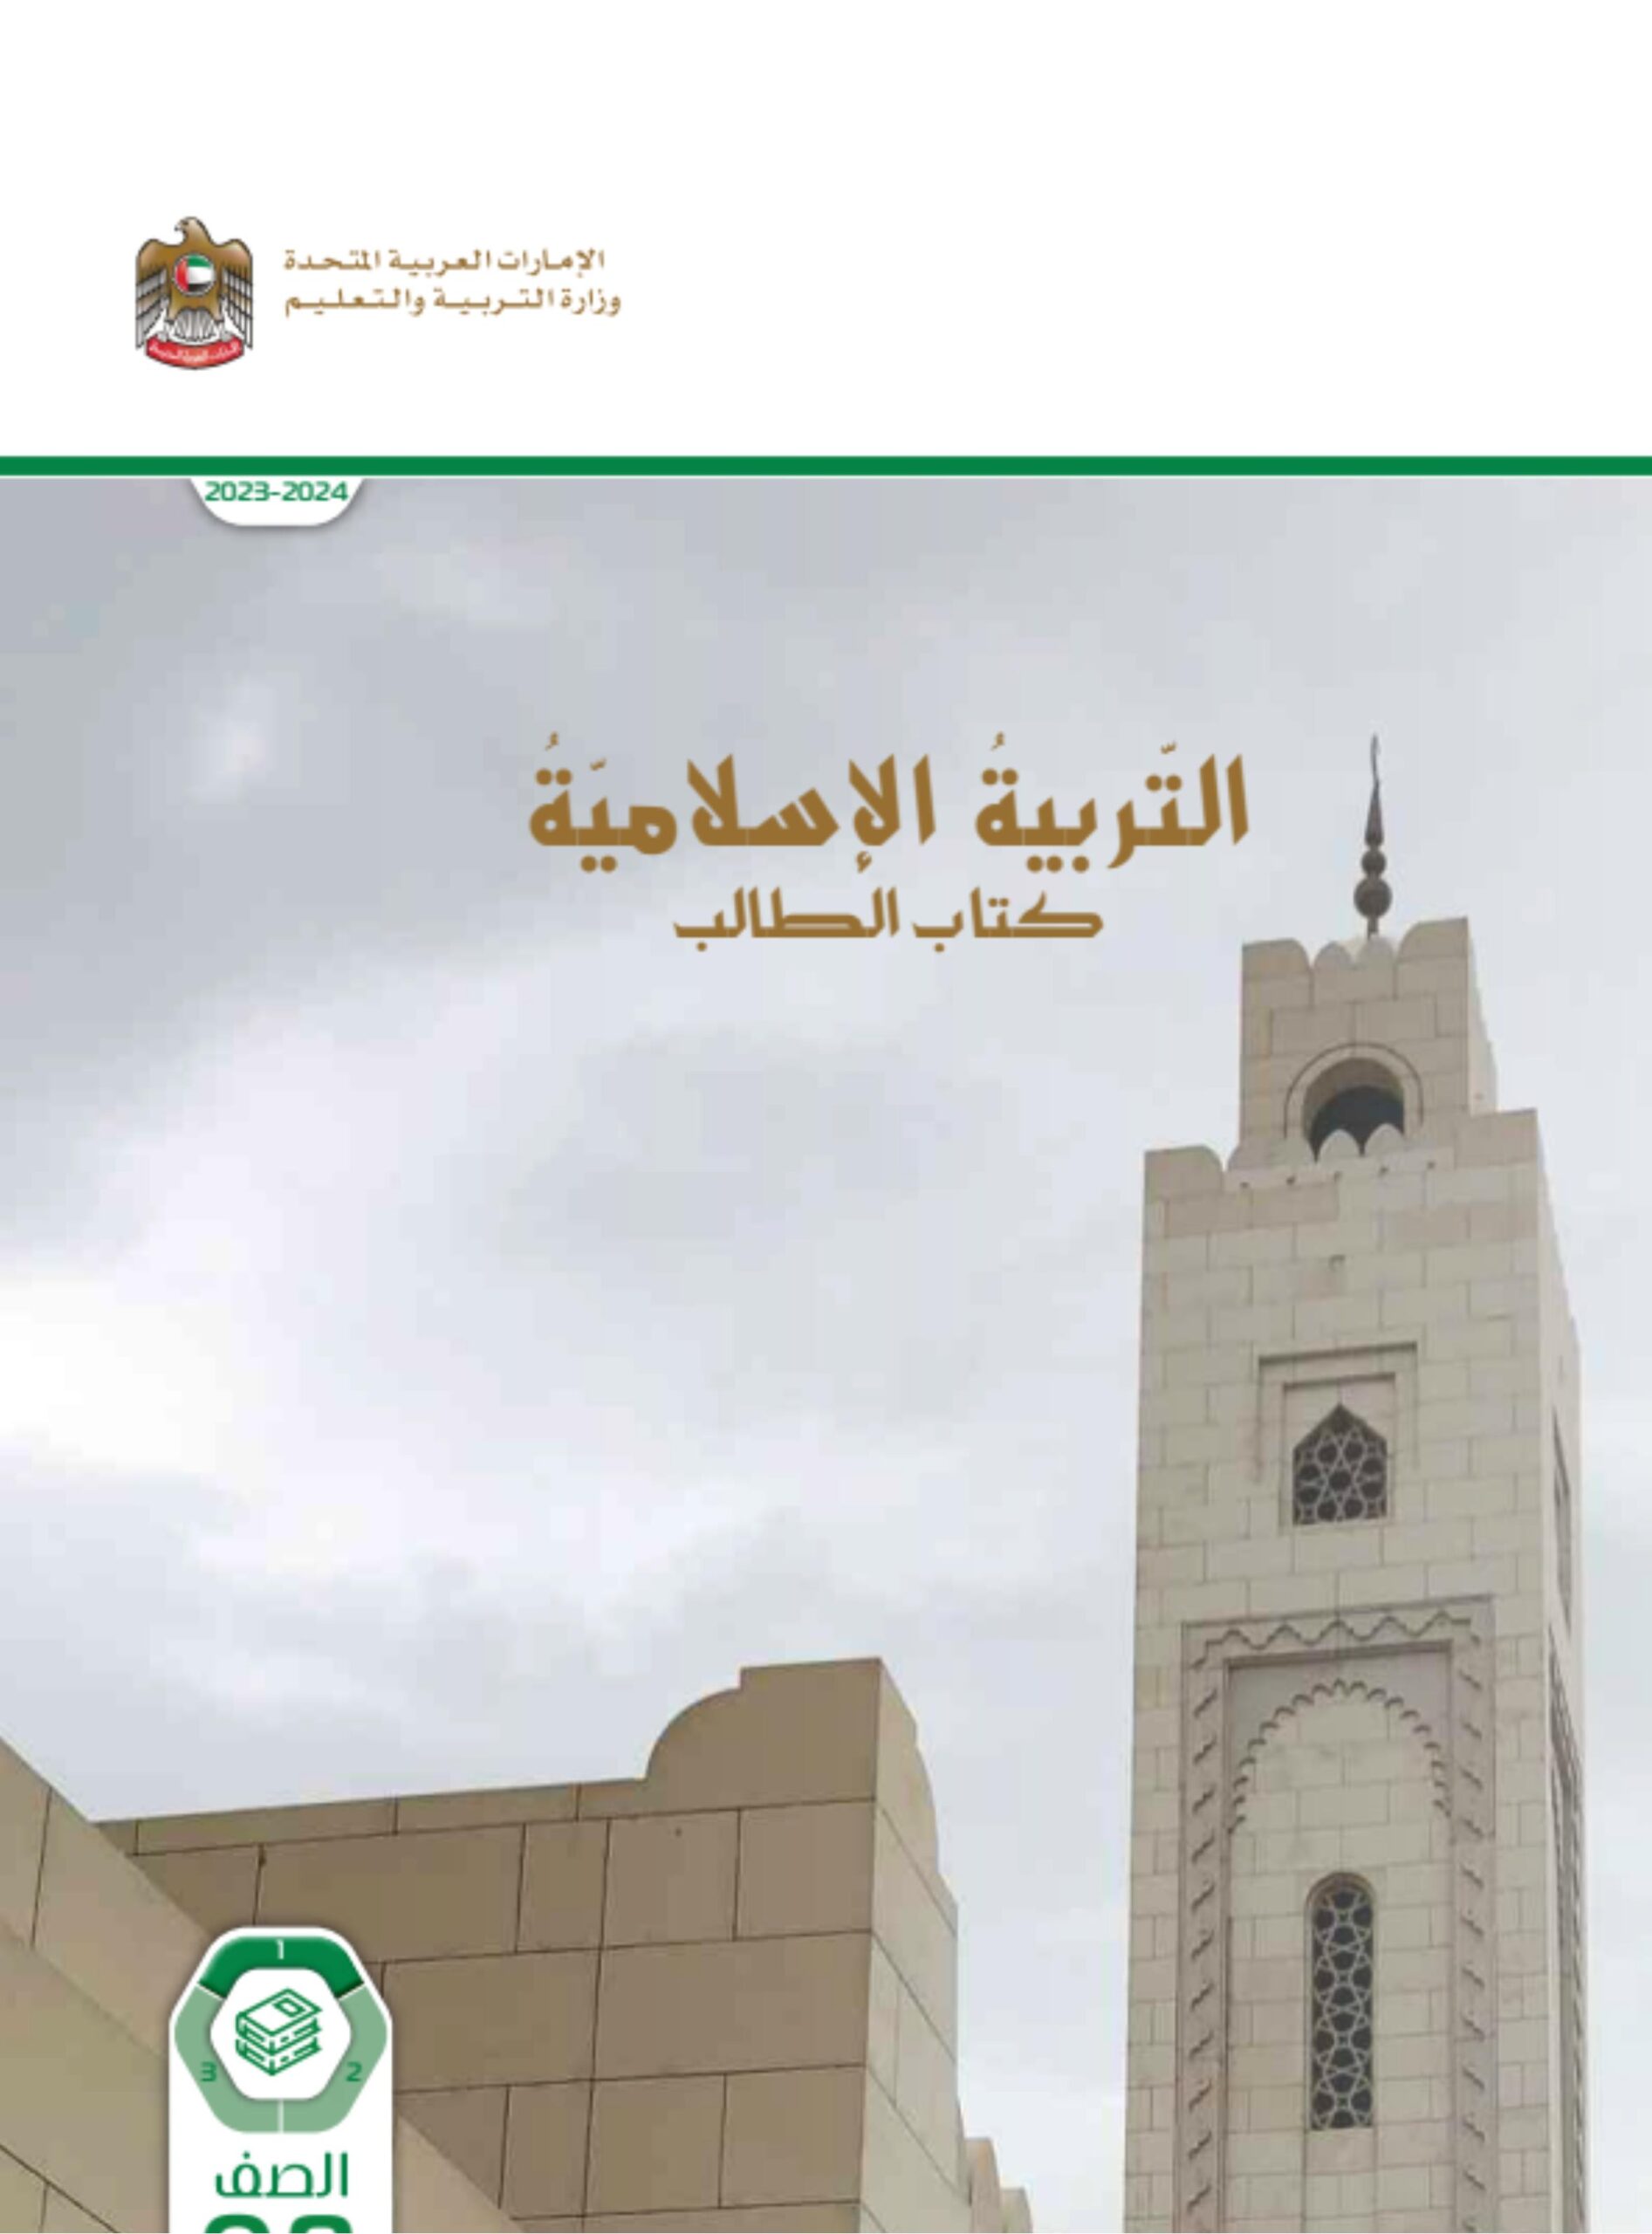 كتاب الطالب التربية الإسلامية الصف الثامن الفصل الدراسي الأول 2023-2024 نسخة مصورة